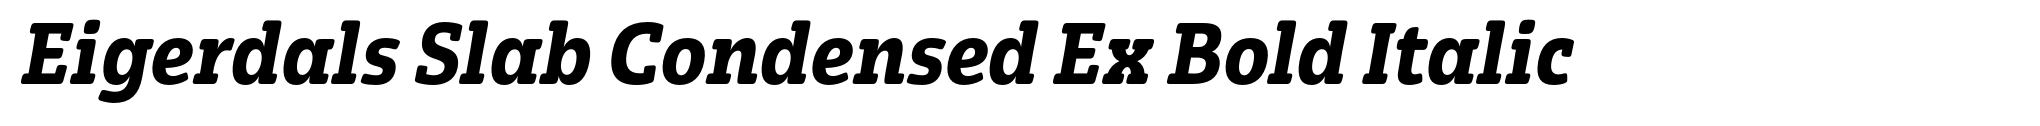 Eigerdals Slab Condensed Ex Bold Italic image